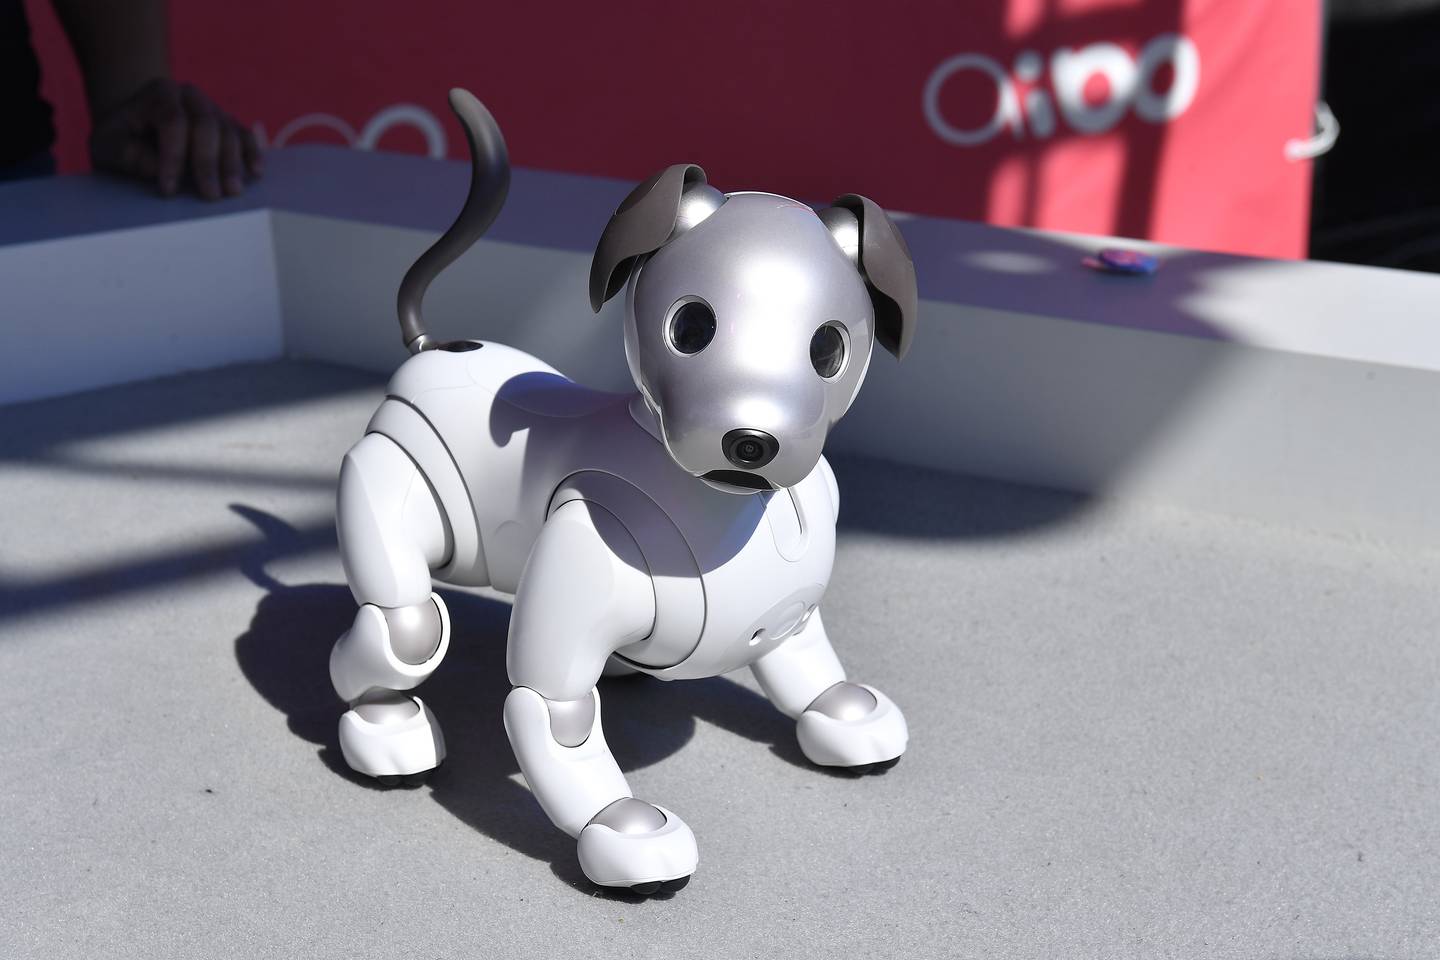 这种由人工智能驱动的机器狗被称为“Aibo”。 照片/盖蒂图片社